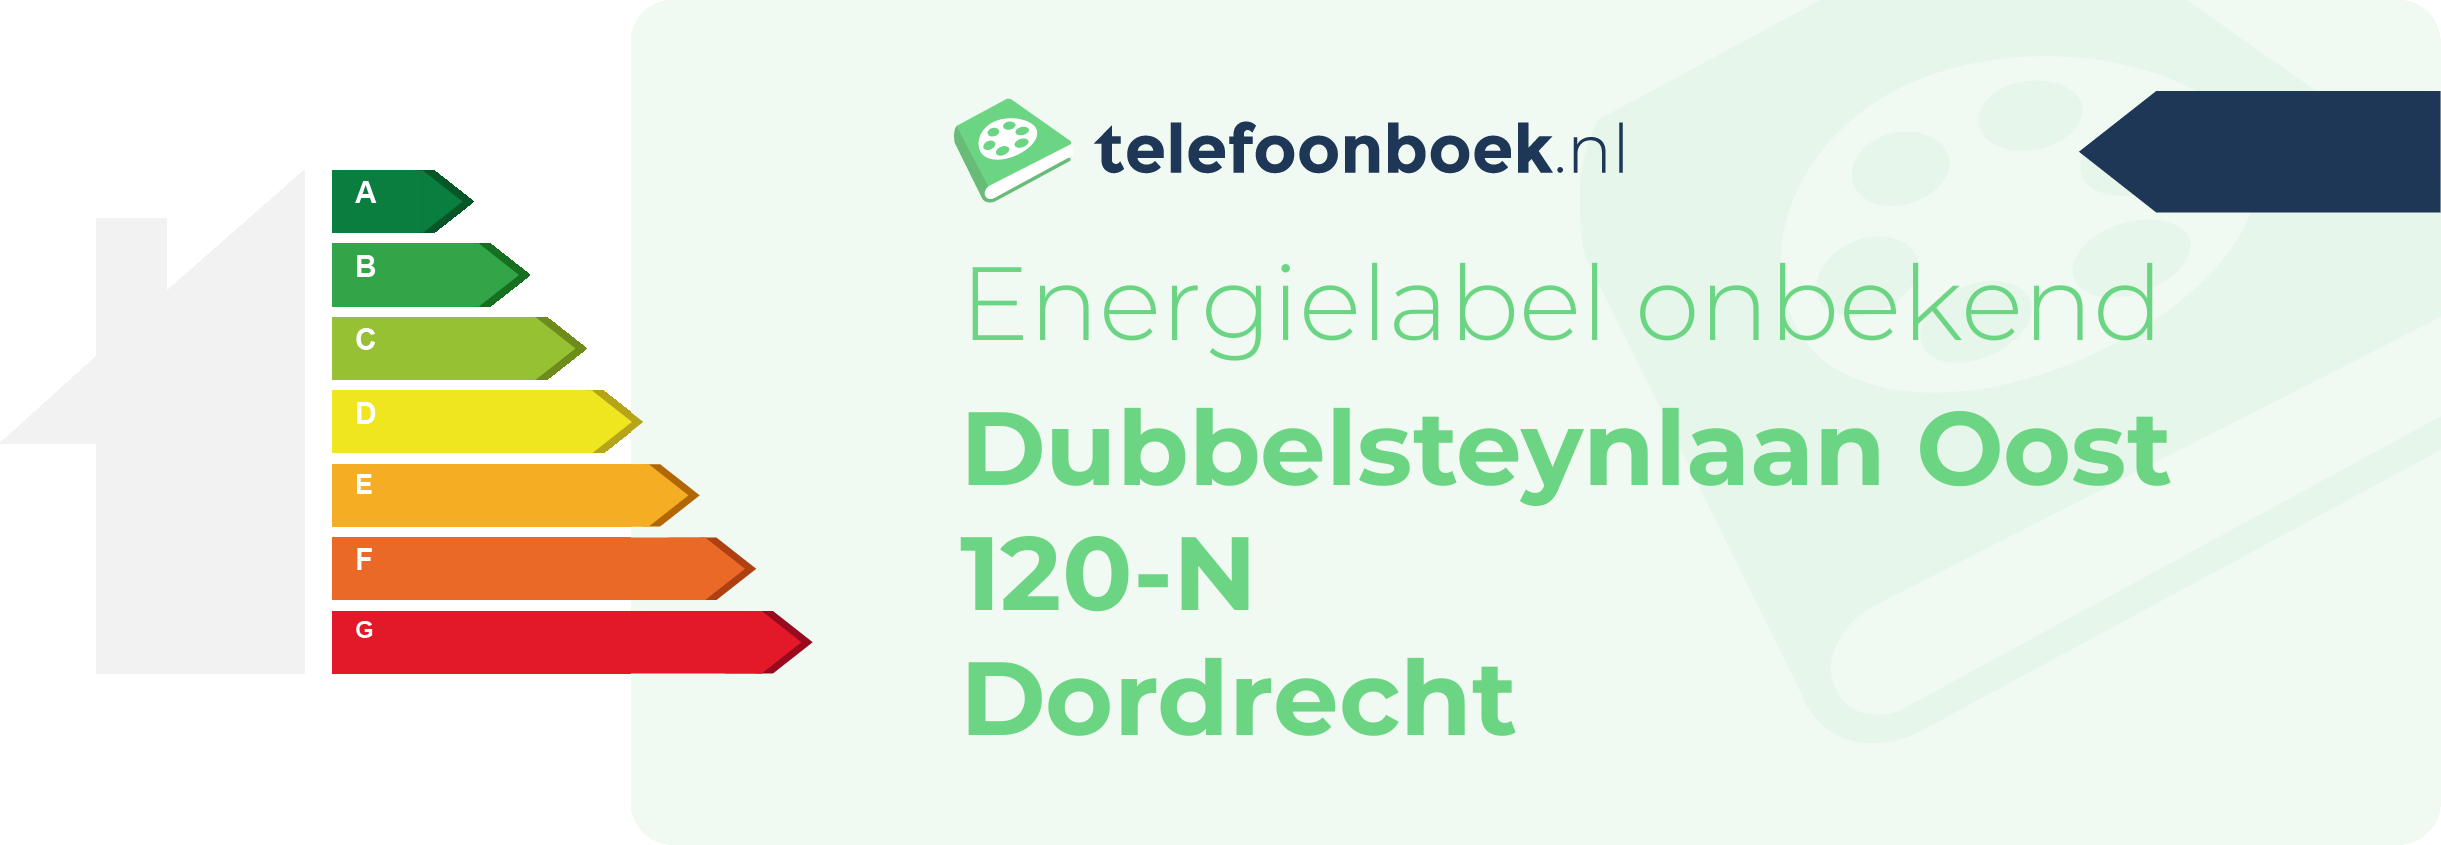 Energielabel Dubbelsteynlaan Oost 120-N Dordrecht